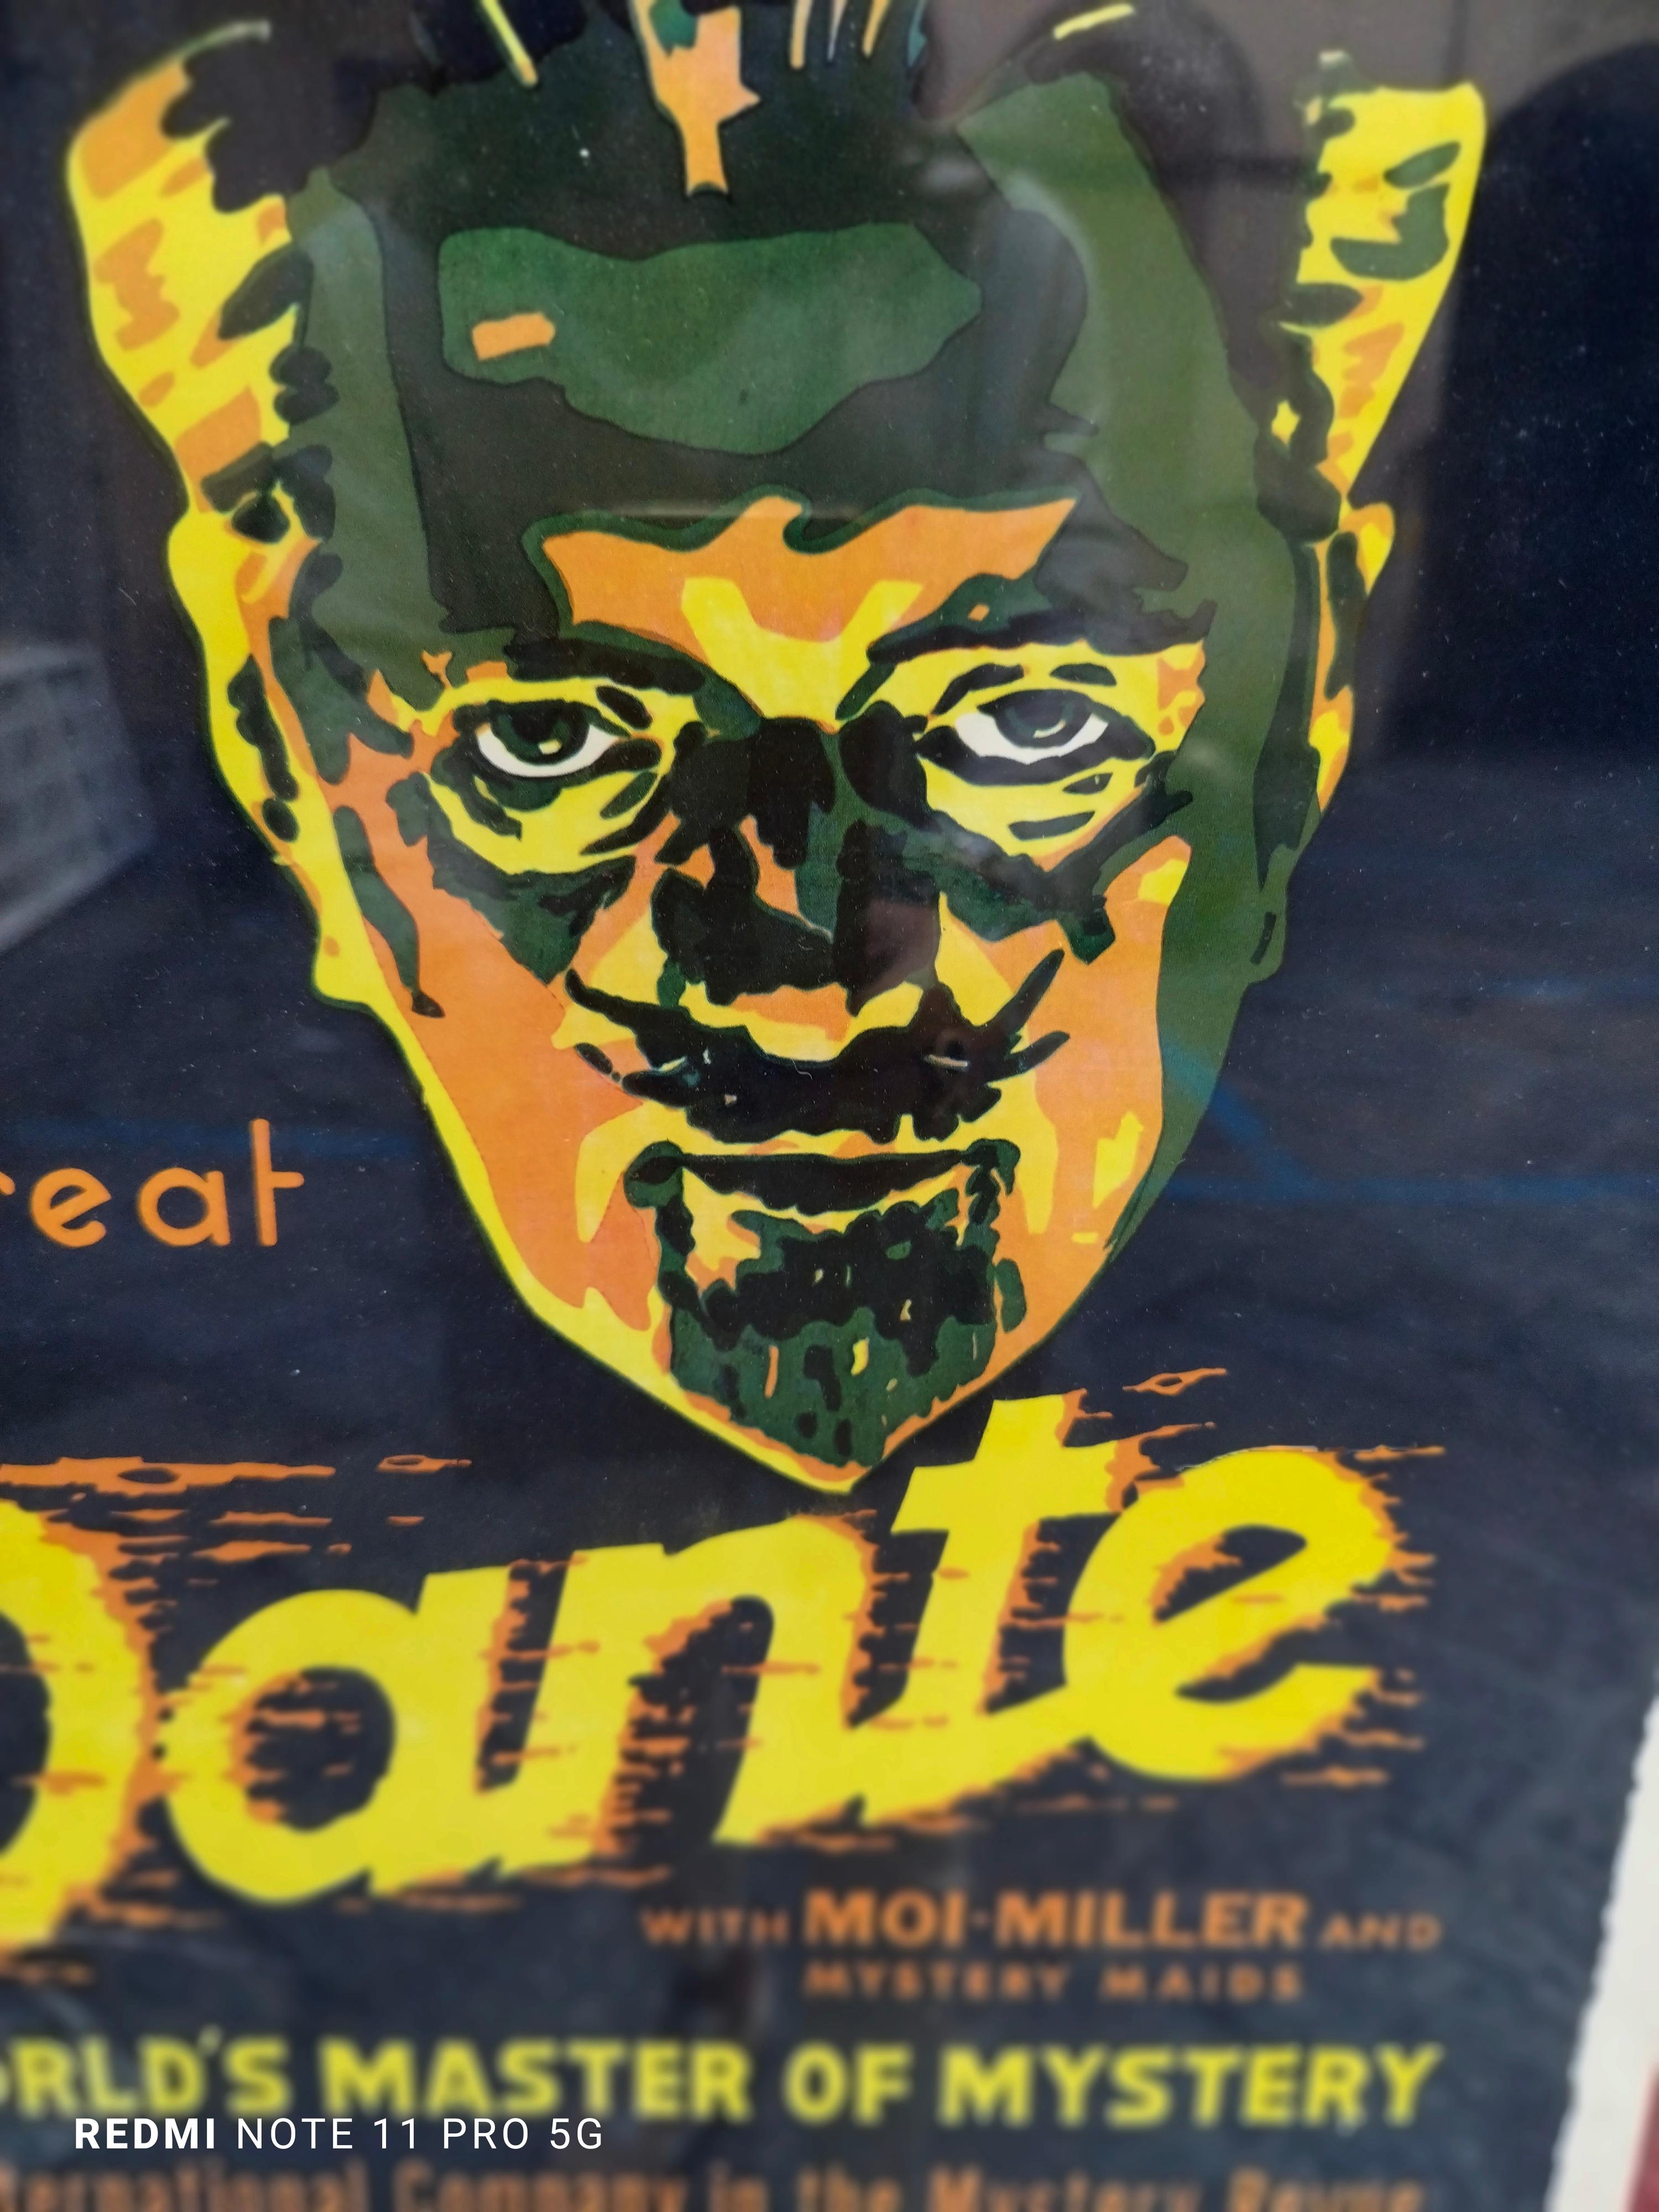 Dieses Plakat wurde verwendet, um für Dantes Zaubershow im NixonTheater Pittsburgh zu werben.
Dante (1883-1955) wurde als Sohn von Harry August Jansen in Dänemark geboren. Als Kind wanderte er in die Vereinigten Staaten aus. Er begann im Bereich der